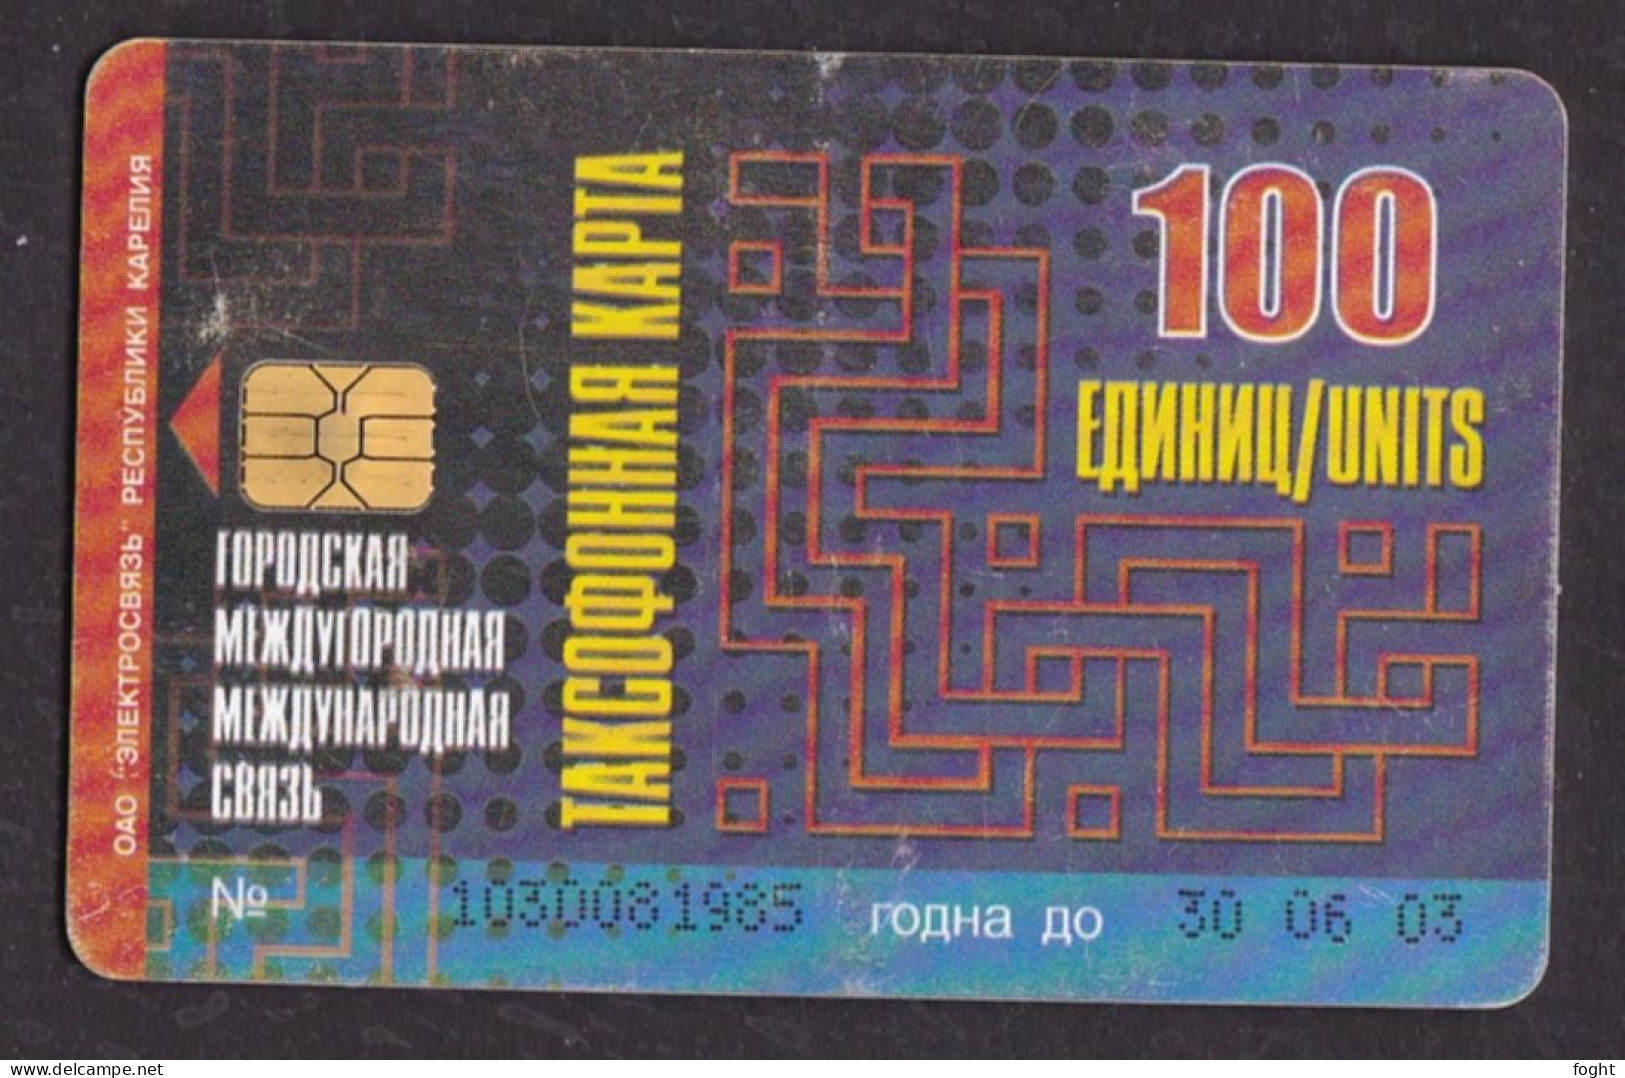 2002 Russia, Phonecard › Kivach/Trout,10 Units,Col:RU-PET-A-0012 - Russia